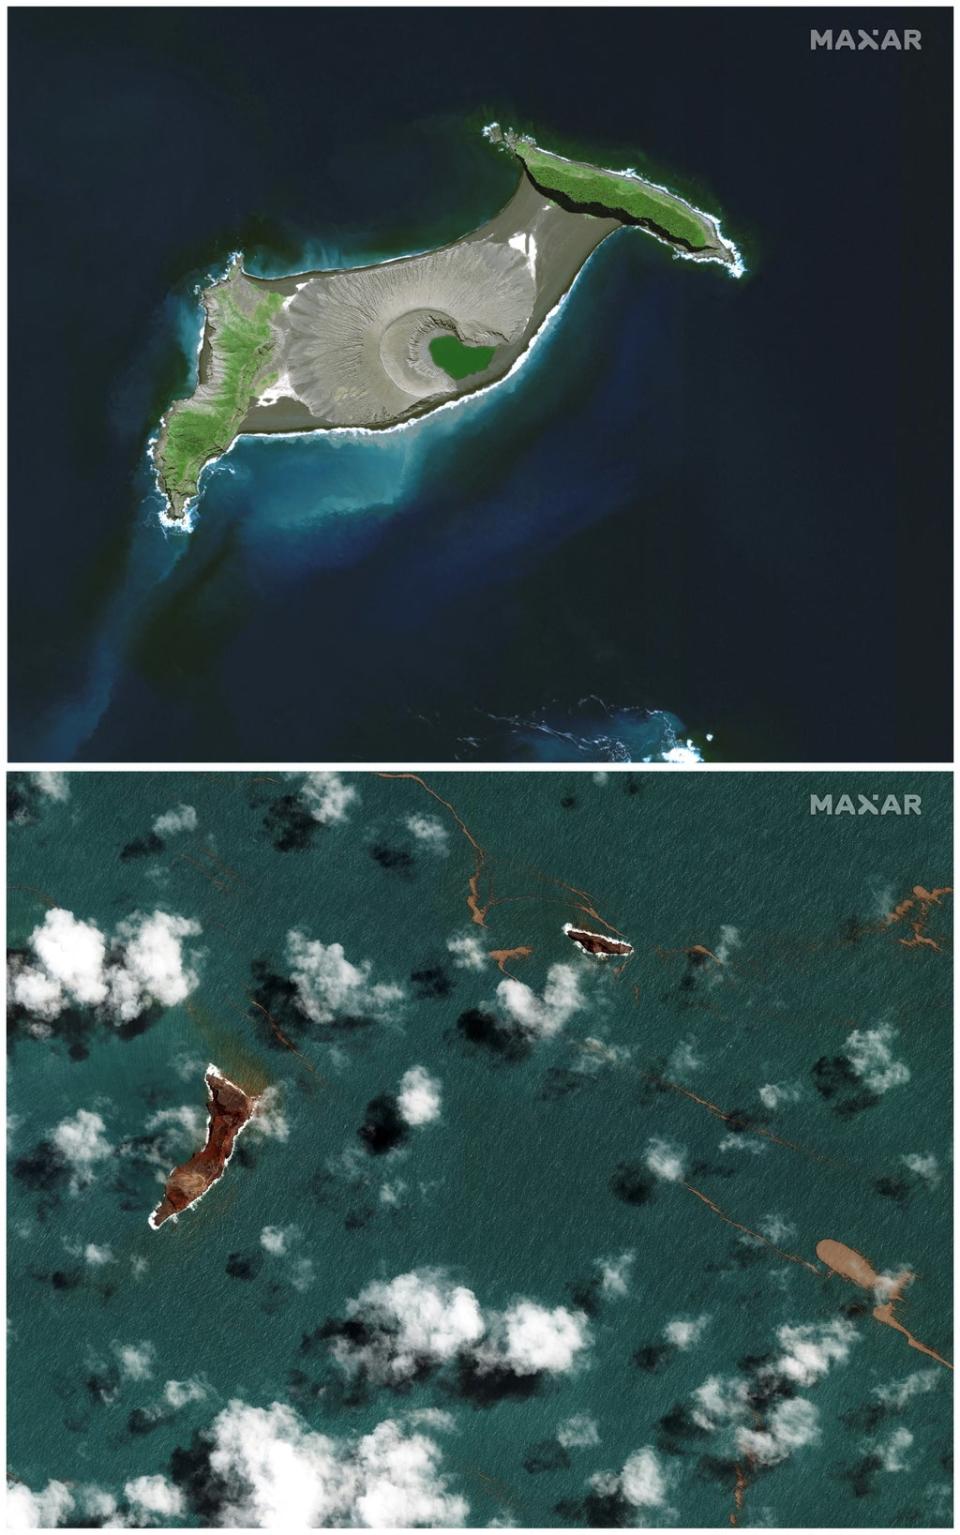 Satellite images show the Hunga Tonga-Hunga Ha'apai volcano before and after (via REUTERS)